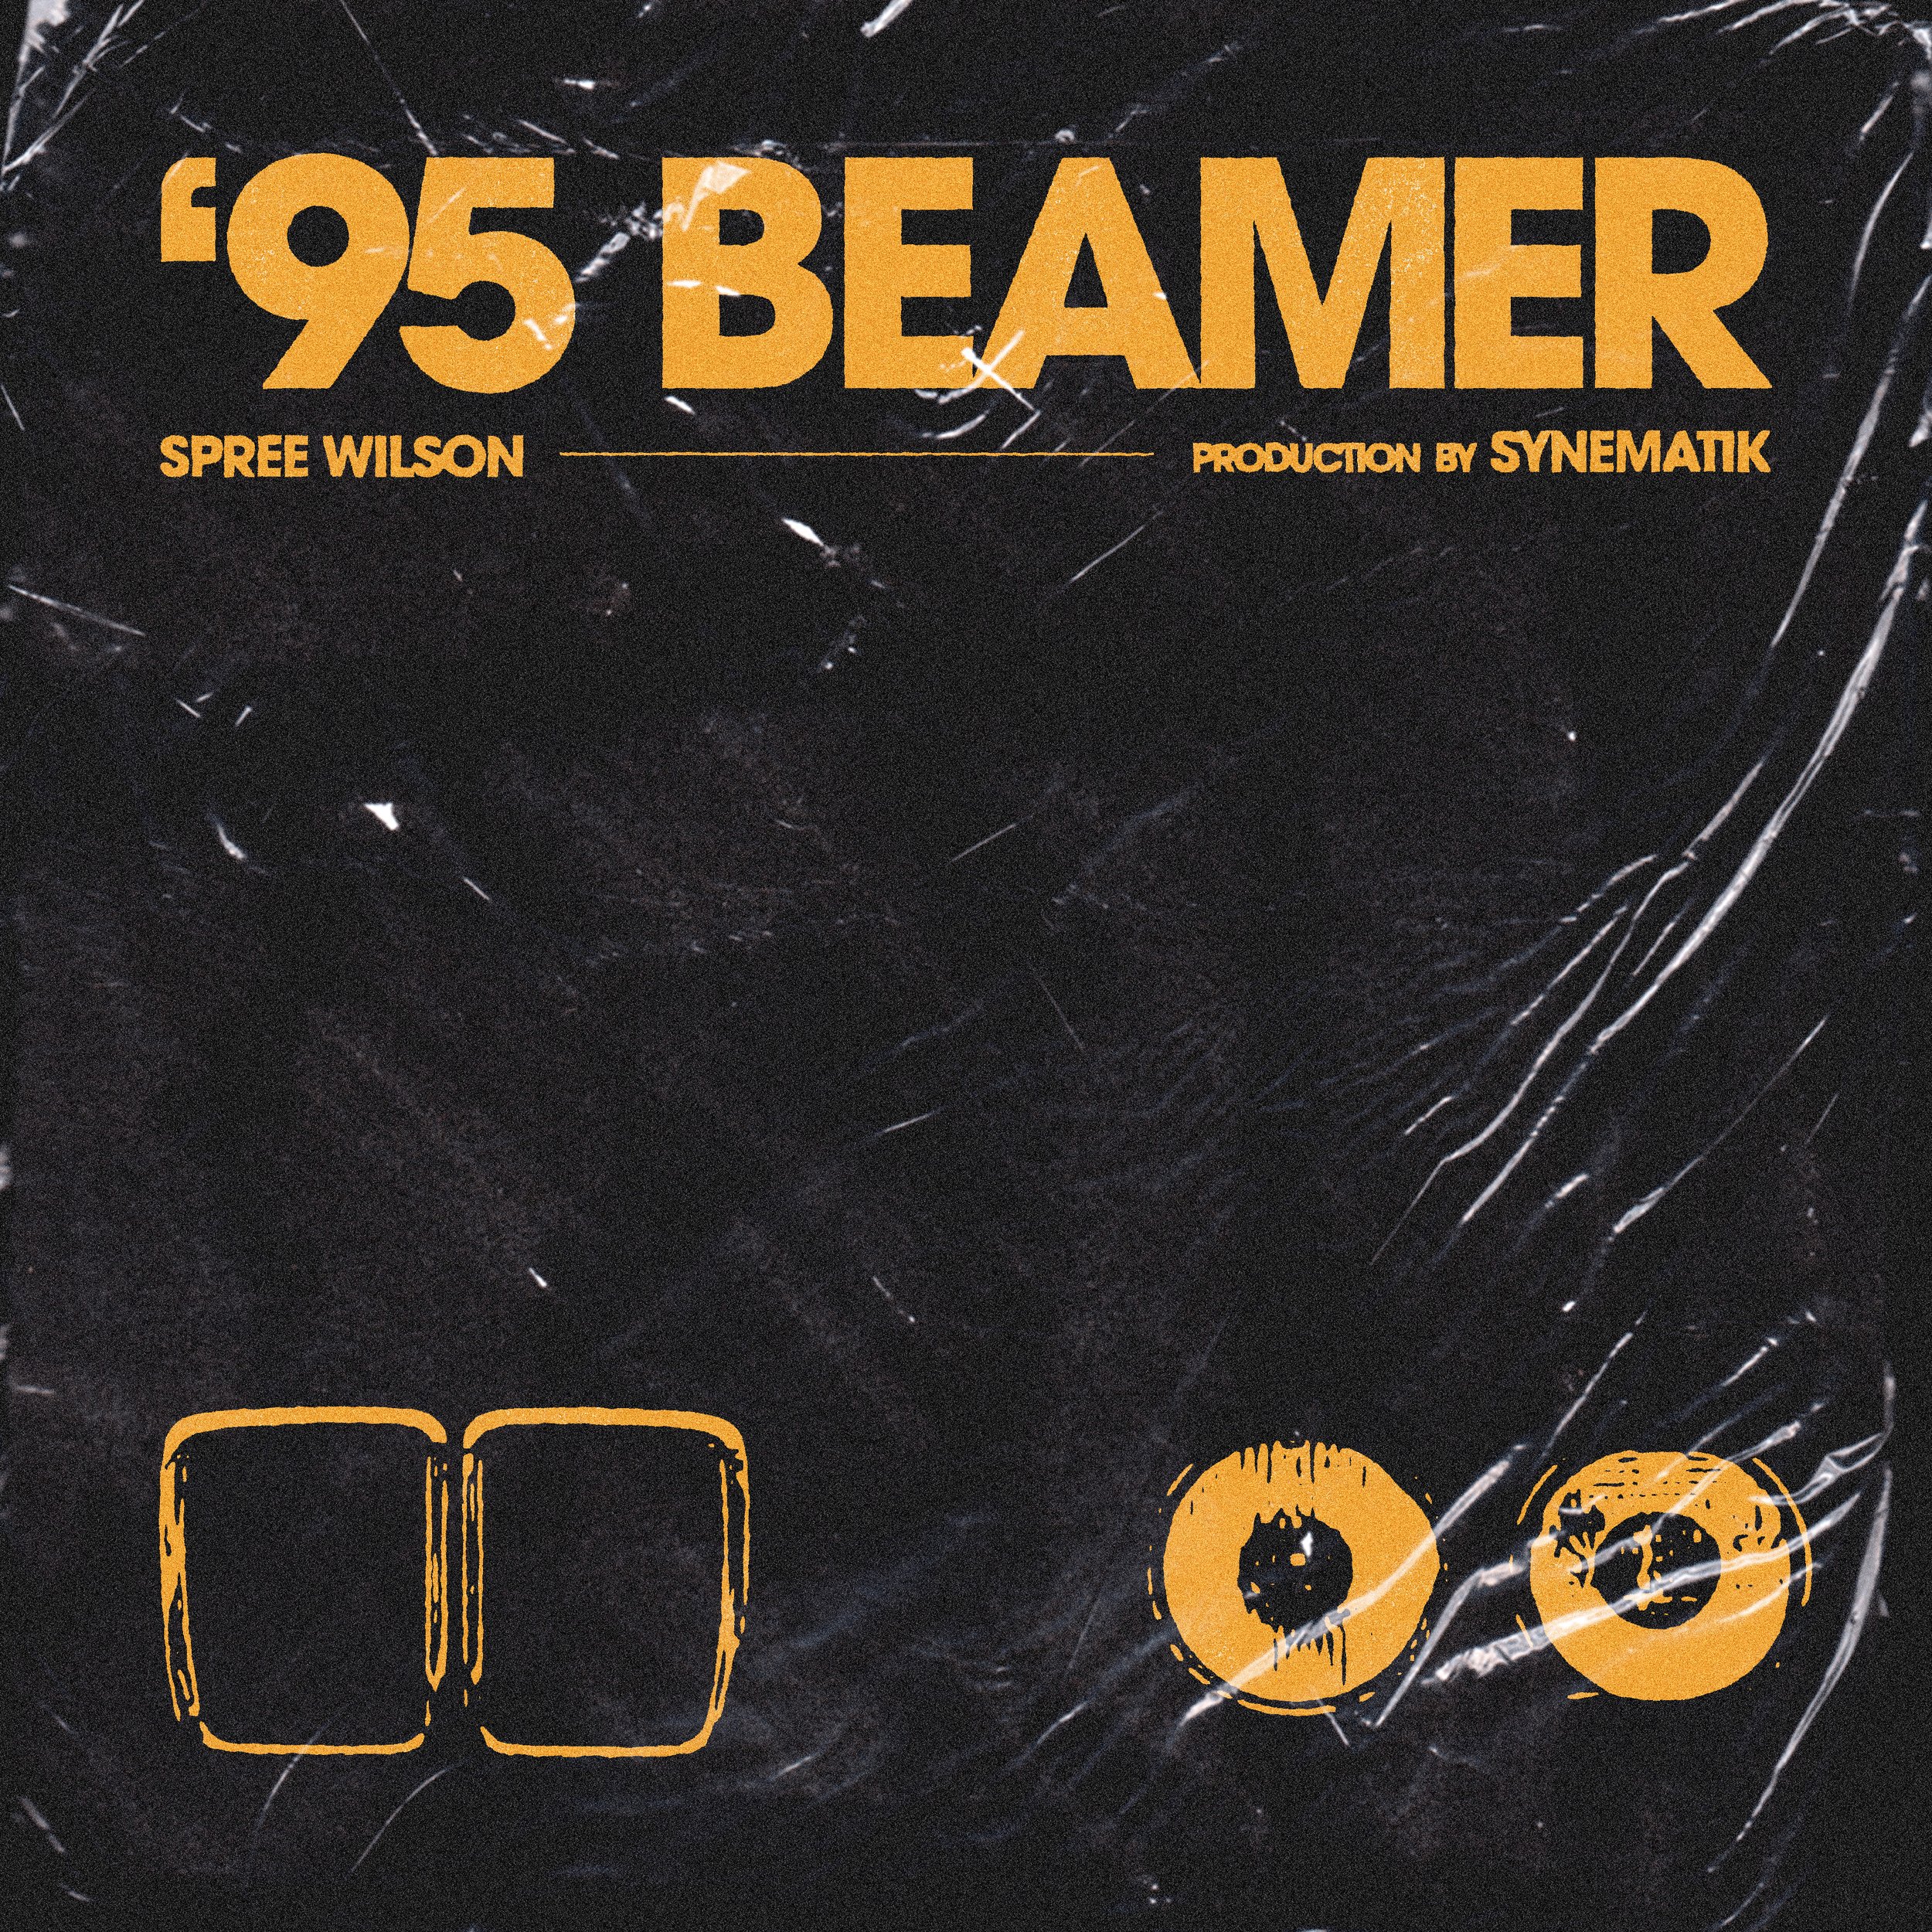 95 beamer artwork 11.jpg